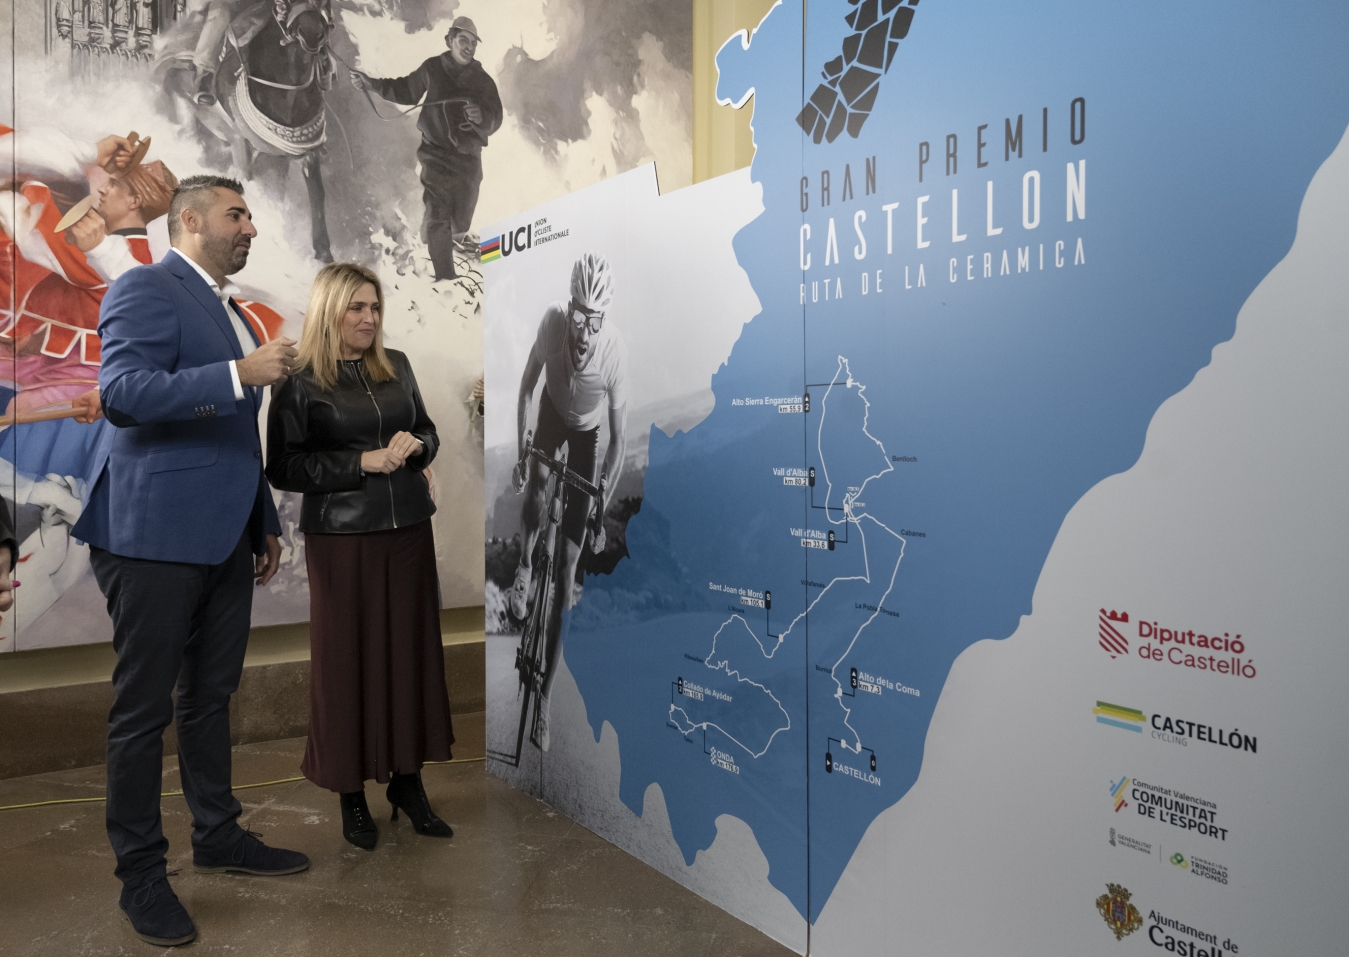 La Diputació de Castelló reforça el seu suport al ciclisme amb el Gran Premi Castelló – Ruta de la Ceràmica i impulsa la província com a escenari esportiu